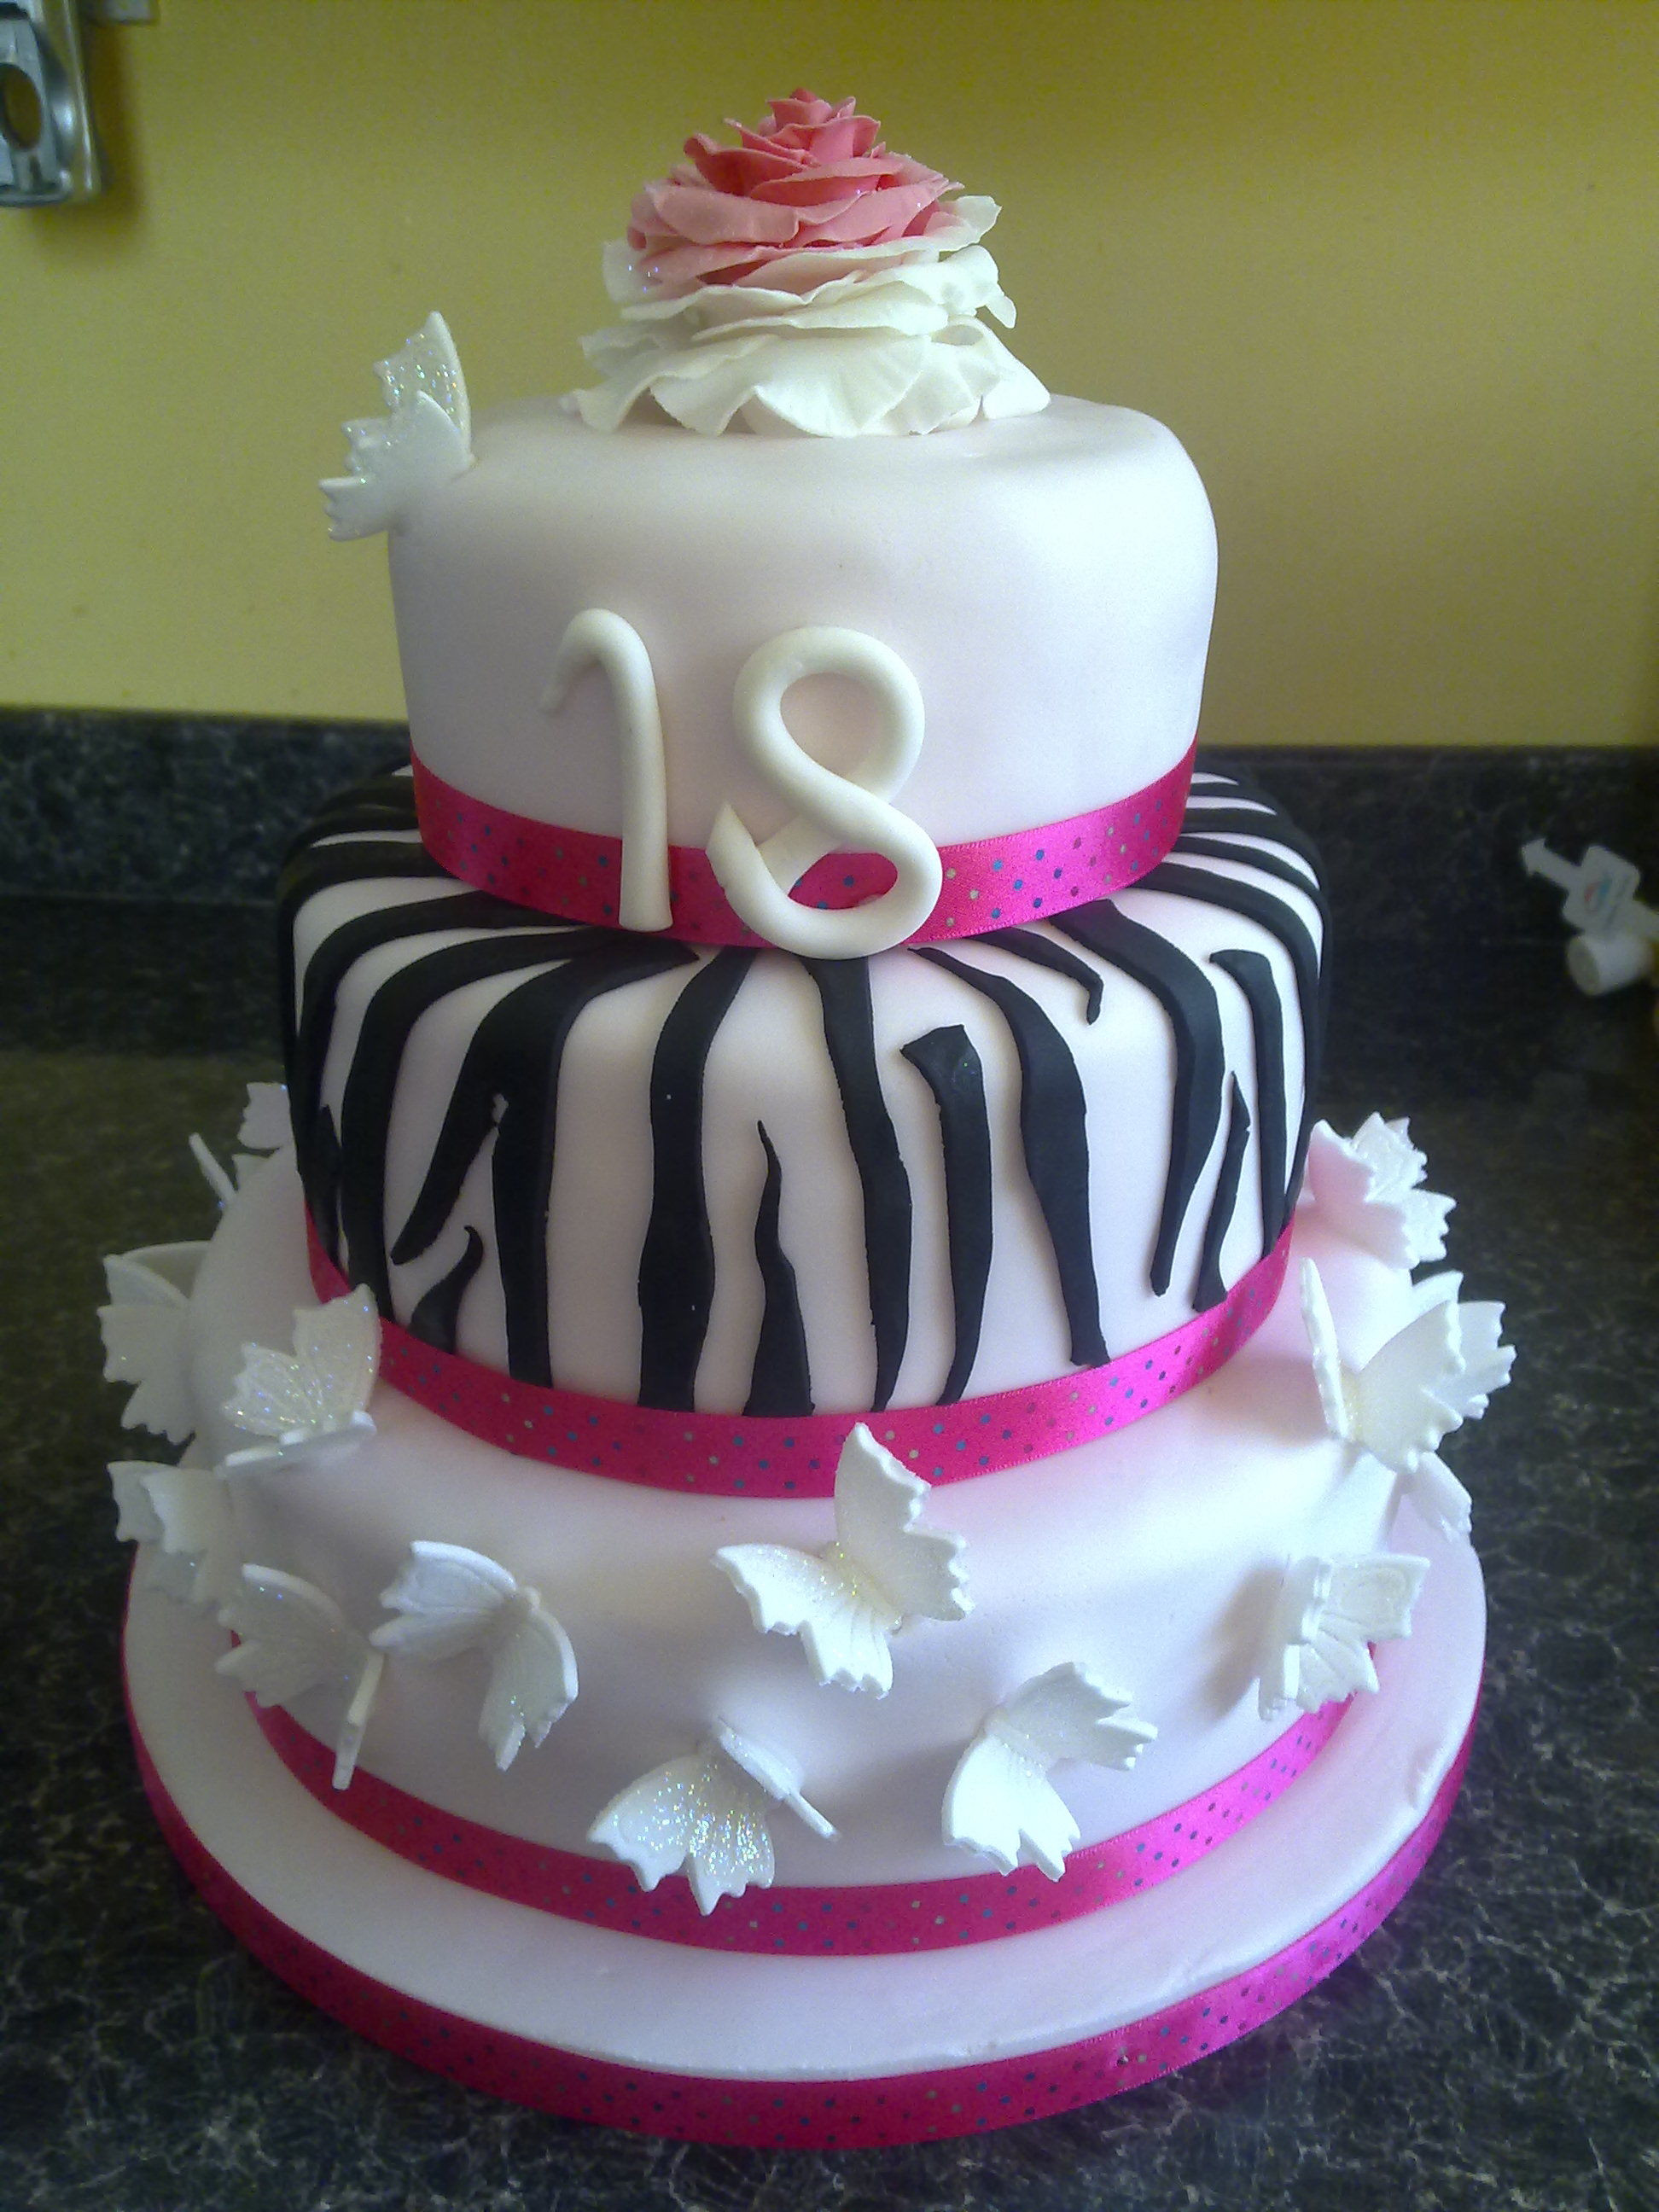 18 cakes